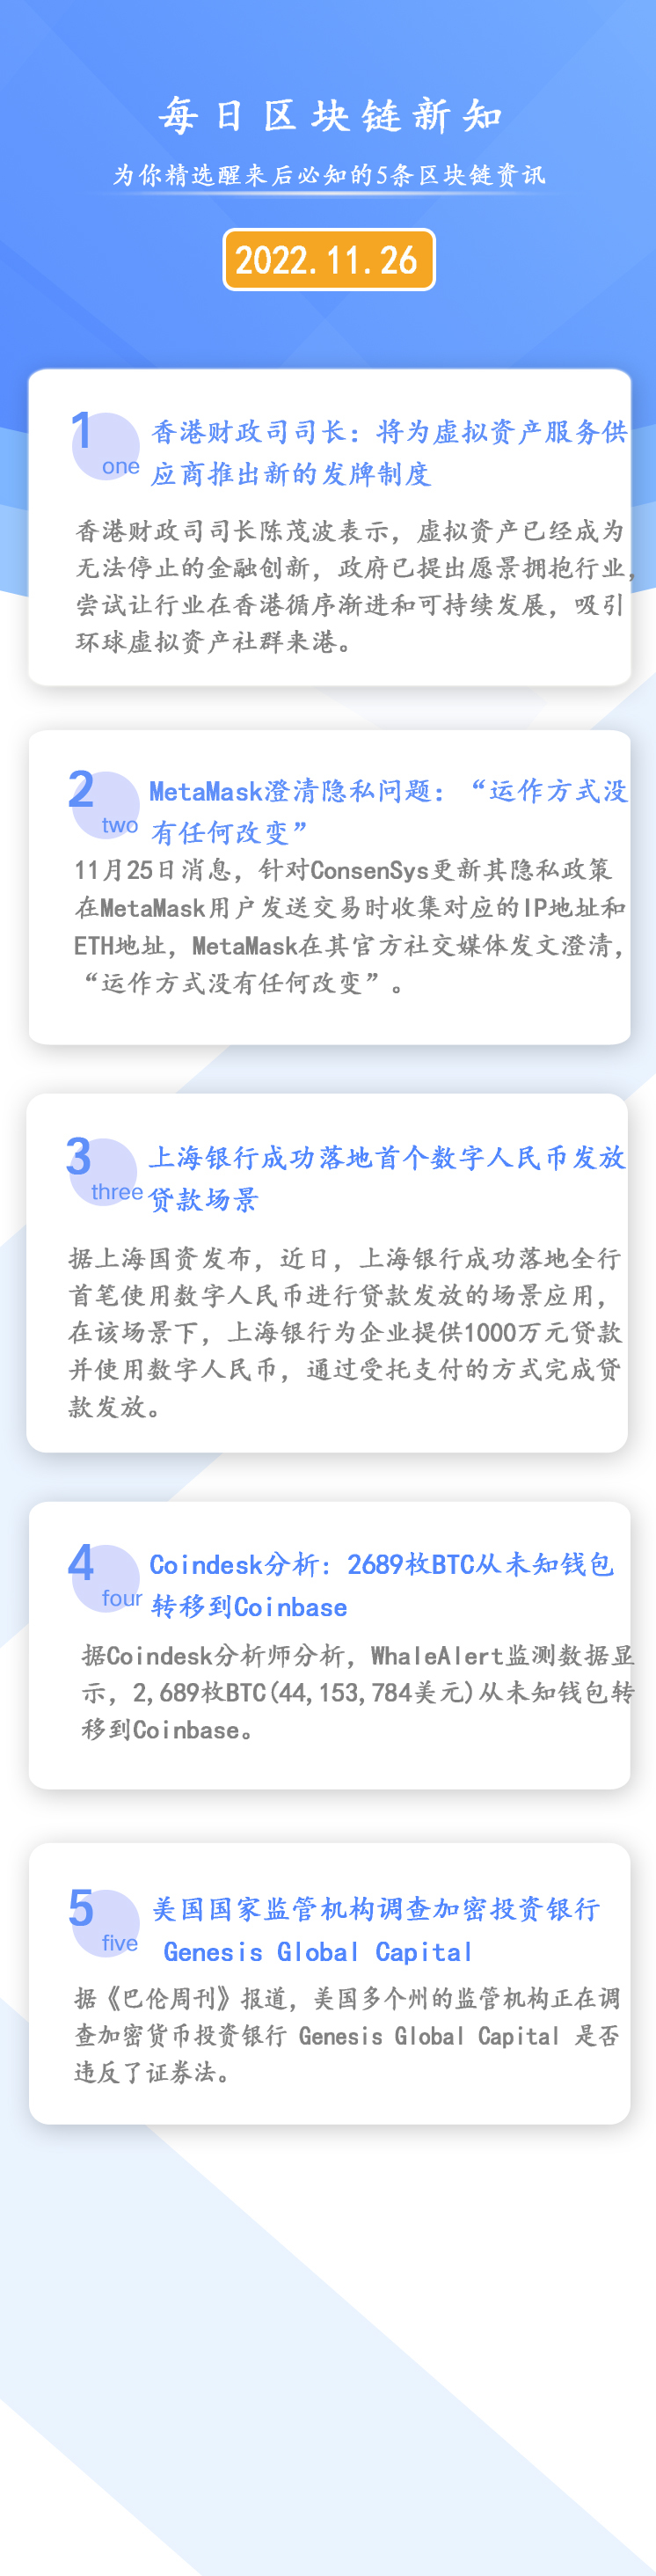 2022年11月26日《区块链必知天天》上海银行成功推出首个数字人民币贷款发行领域